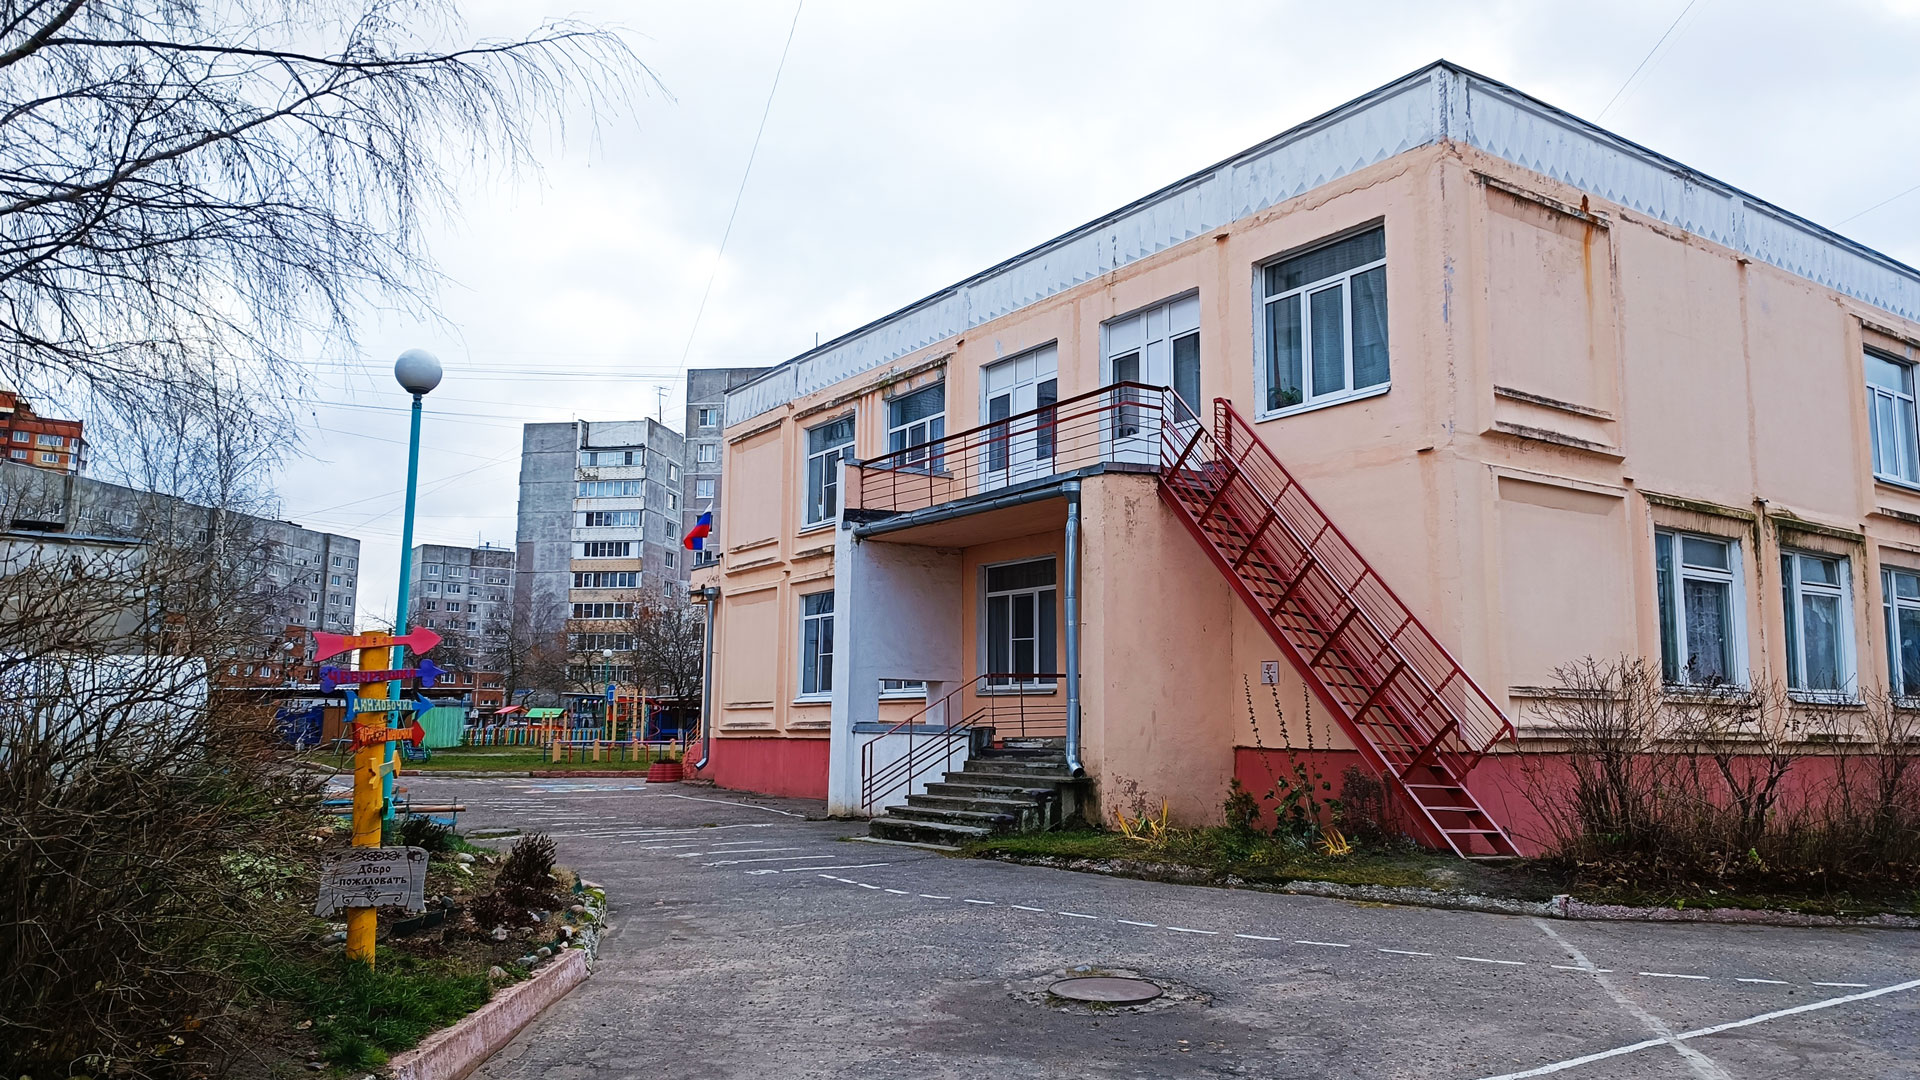 Детский сад 30 Ярославль: общий вид здания.